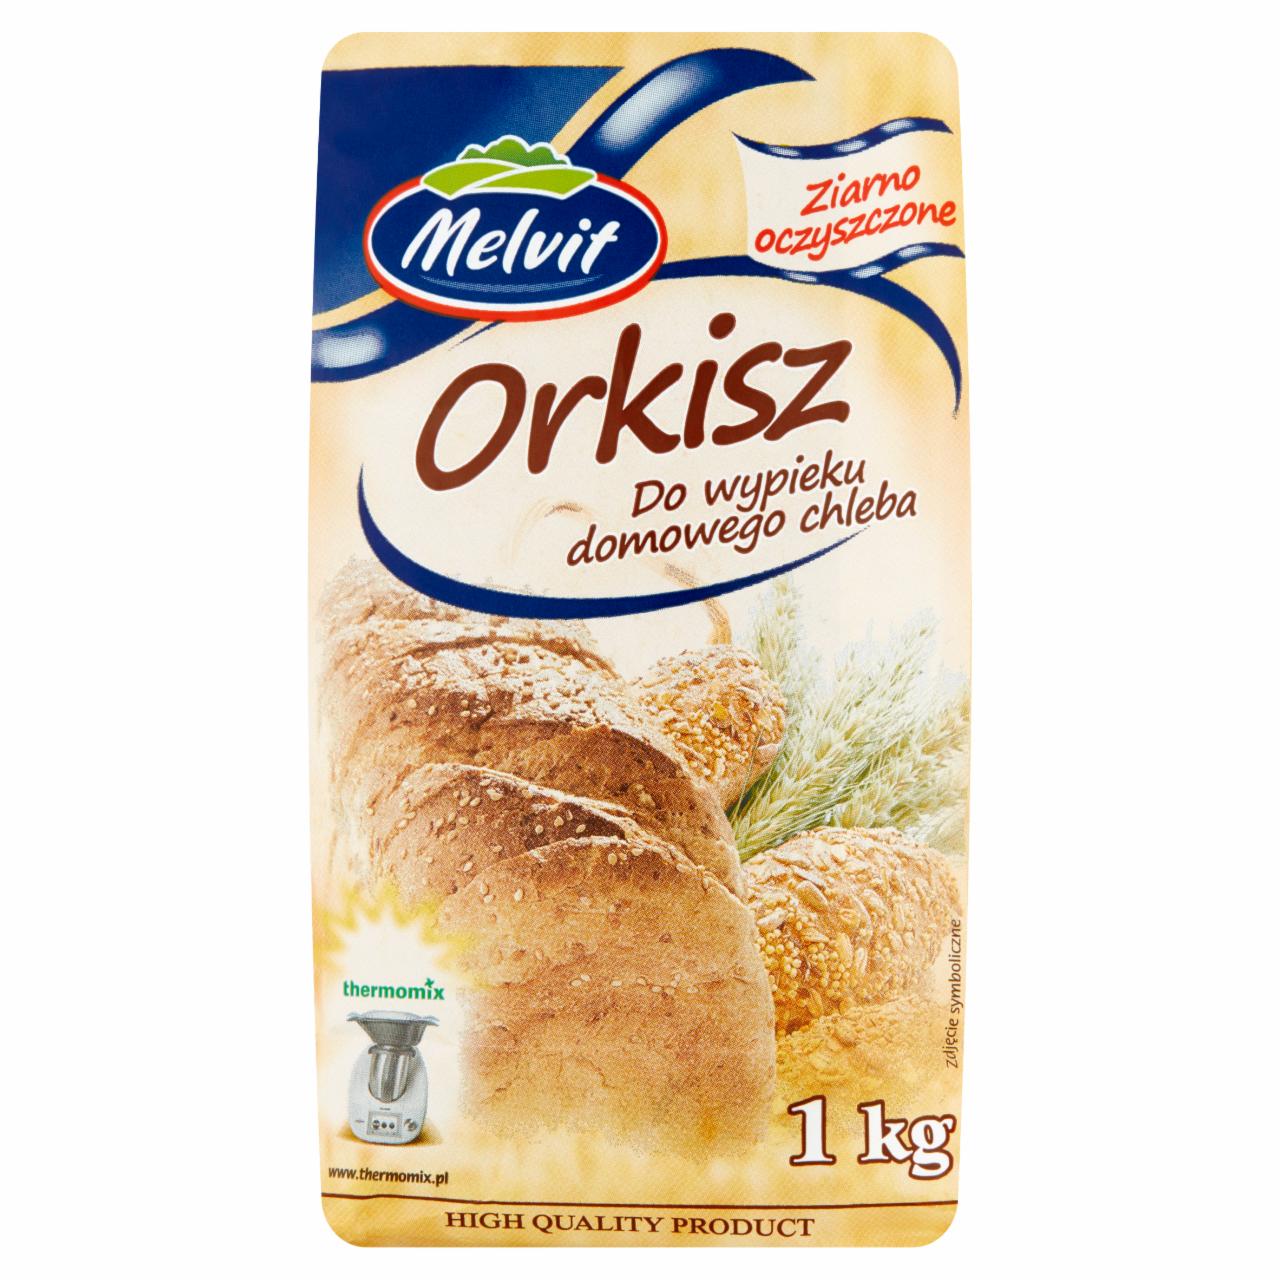 Zdjęcia - Melvit Orkisz do wypieku domowego chleba 1 kg